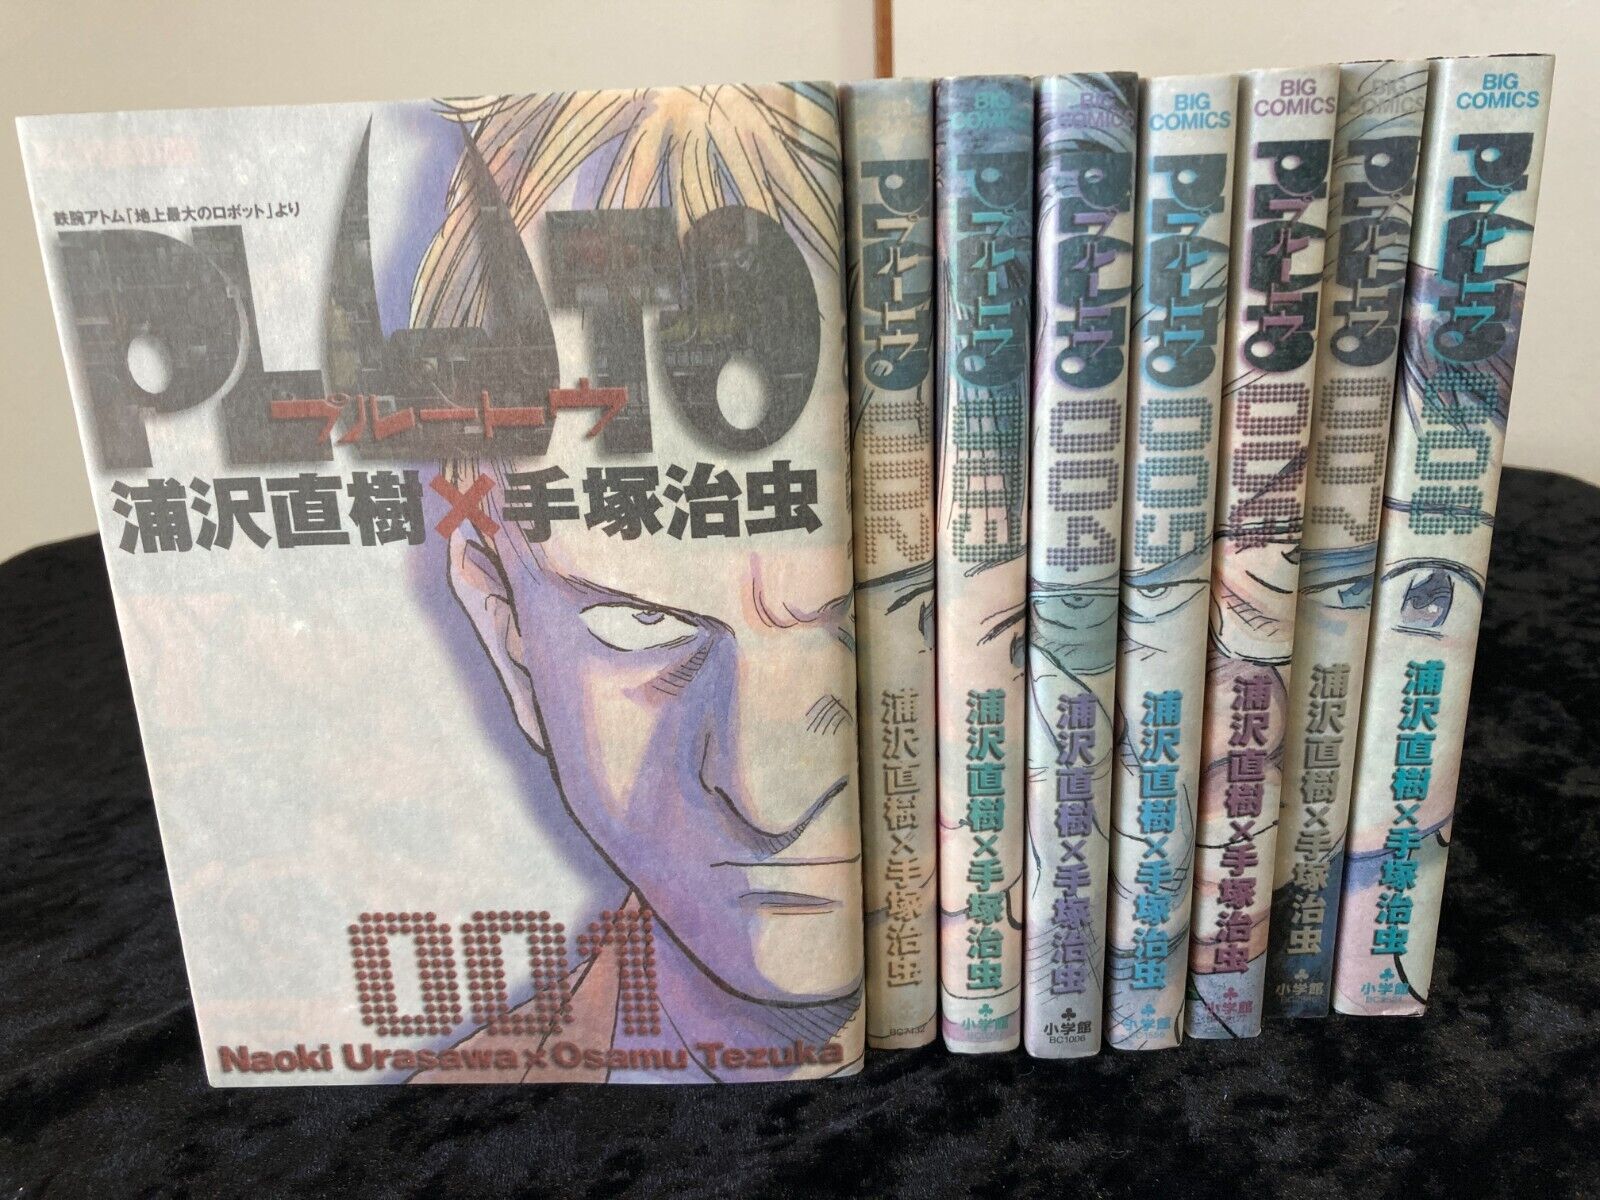 PLUTO vol. 1-8 complete set manga comic by Naoki Urasawa×Osamu Tezuka Japanese